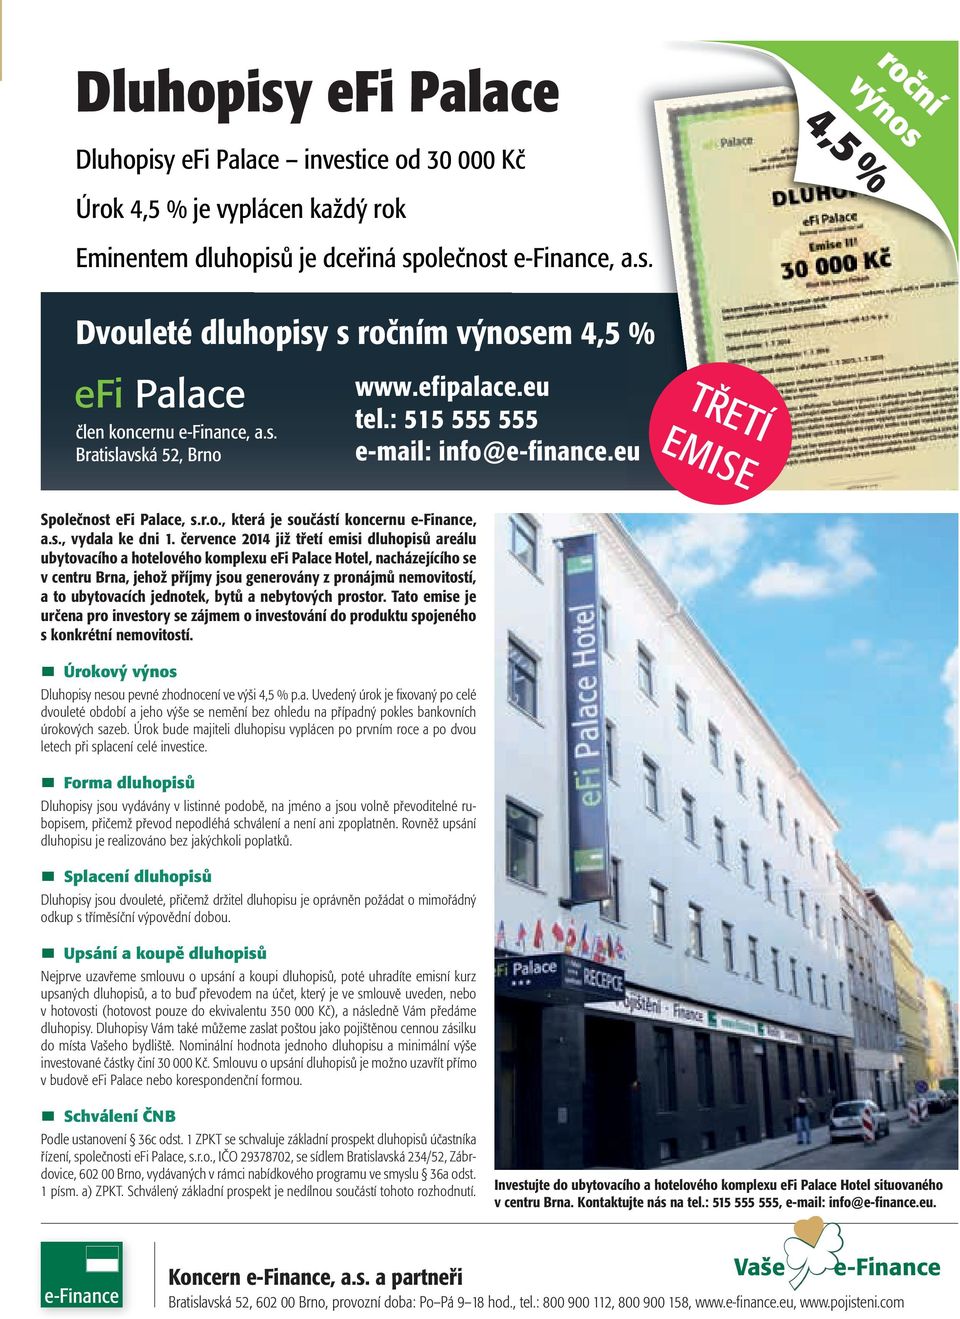 července 2014 již třetí emisi dluhopisů areálu ubytovacího a hotelového komplexu efi Palace Hotel, nacházejícího se v centru Brna, jehož příjmy jsou generovány z pronájmů nemovitostí, a to